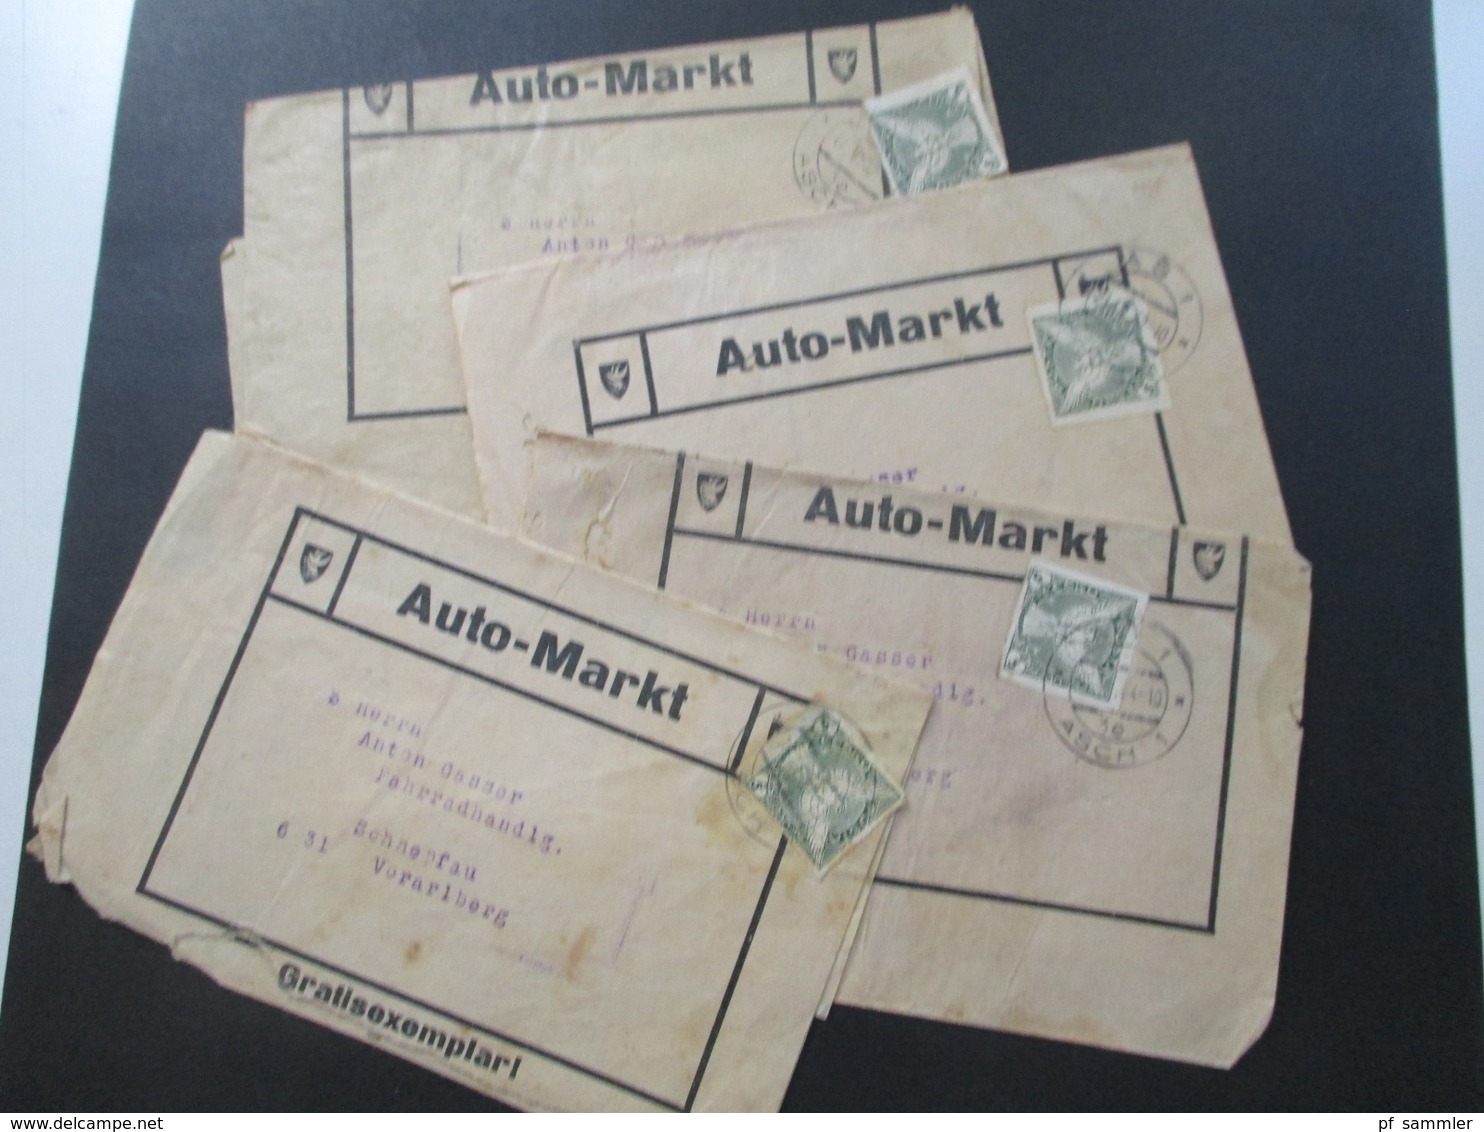 CSSR 1932 Streifbänder Auto Markt Gratisexemplar Stempel As 1 Asch (Sudetenland) Nach Schnepfau Fahrradhandlung - Briefe U. Dokumente